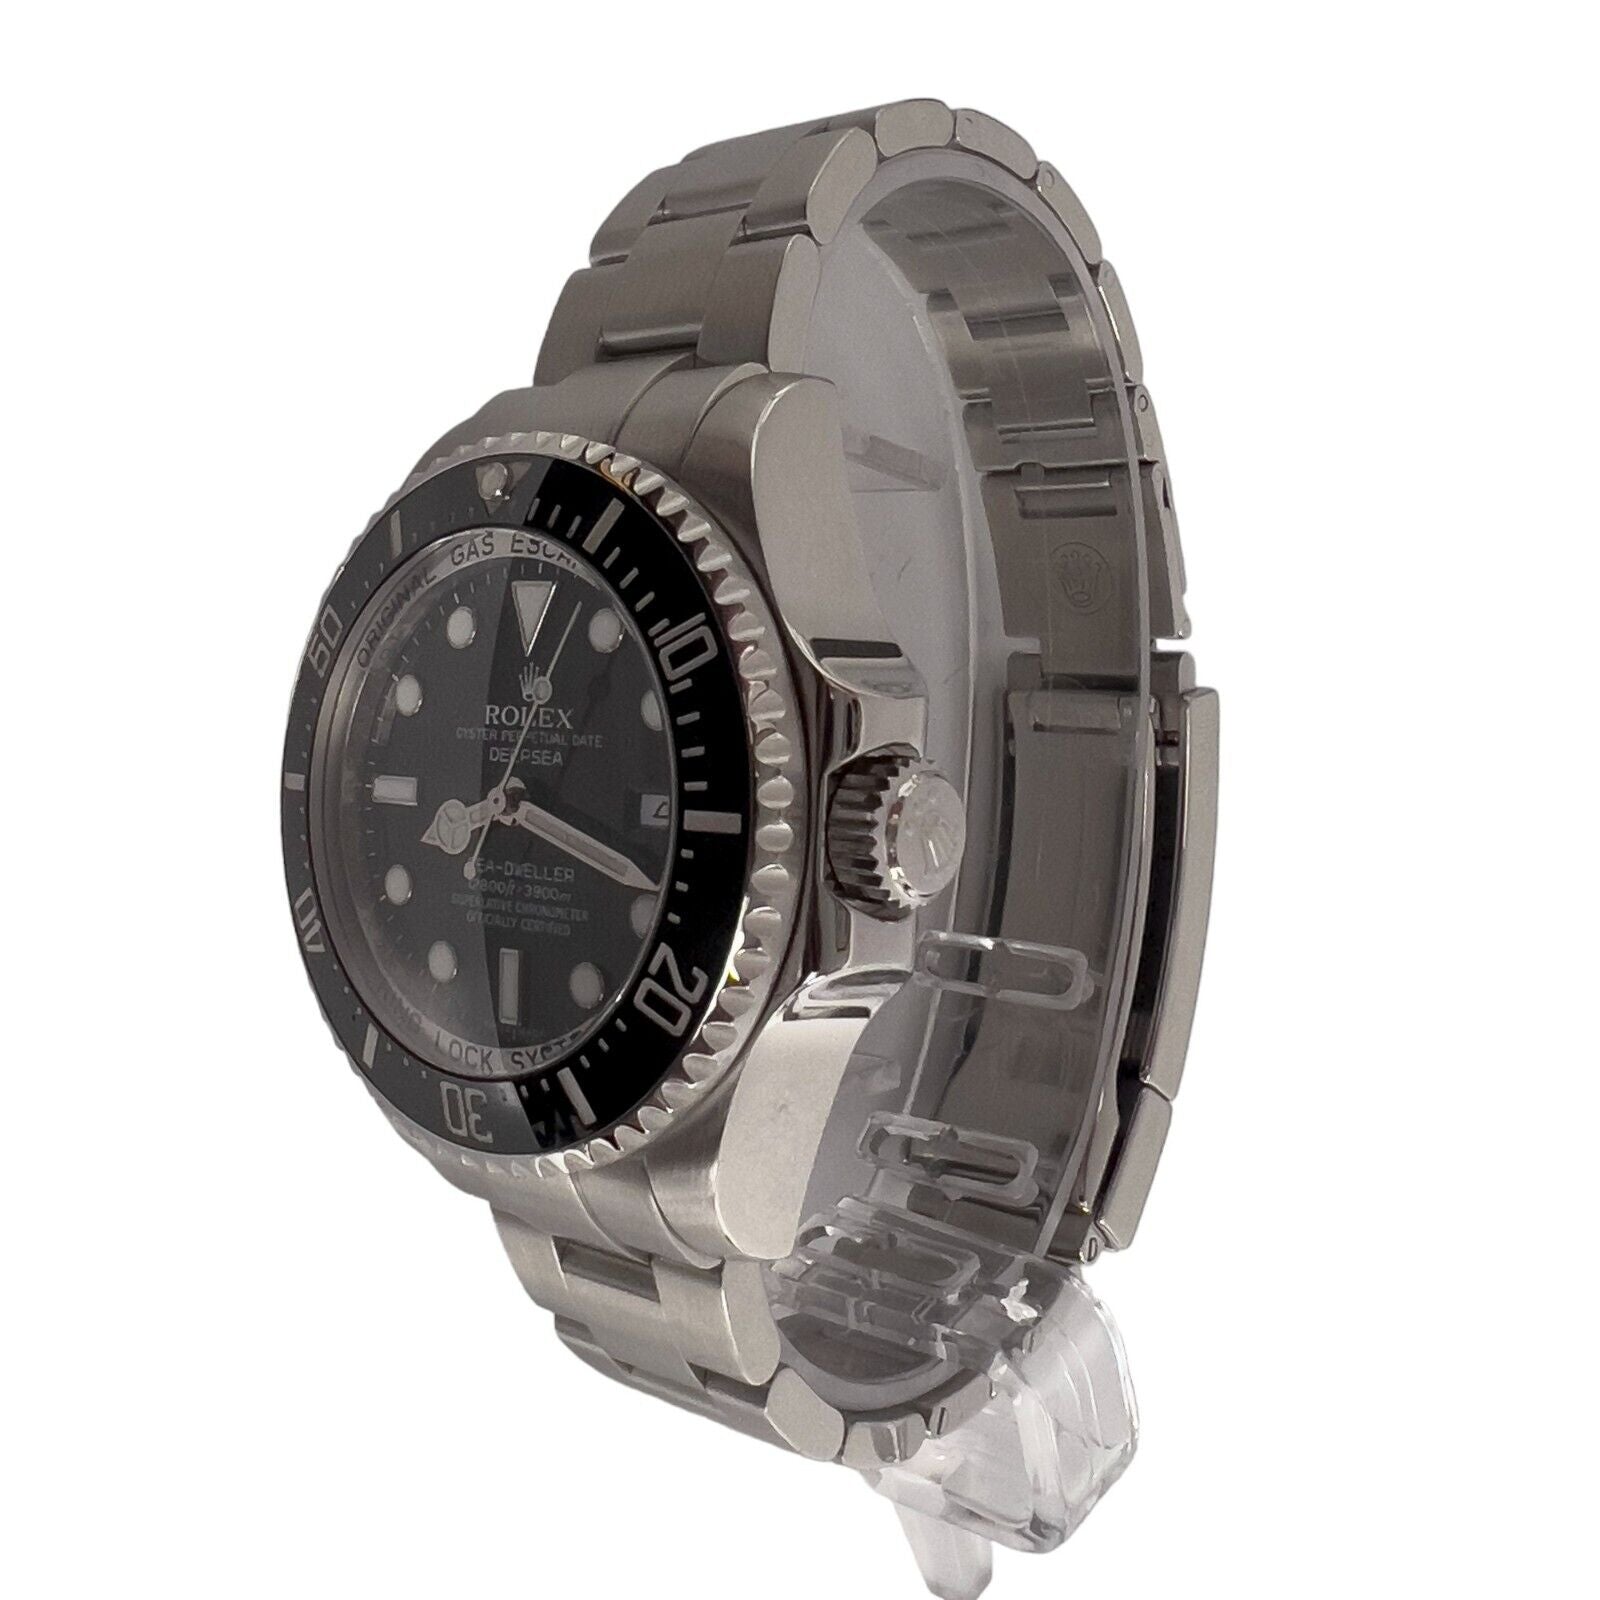 Rolex Sea-Dweller Deepsea Stainless Steel 44mm Black Watch 116660 w/ BOX